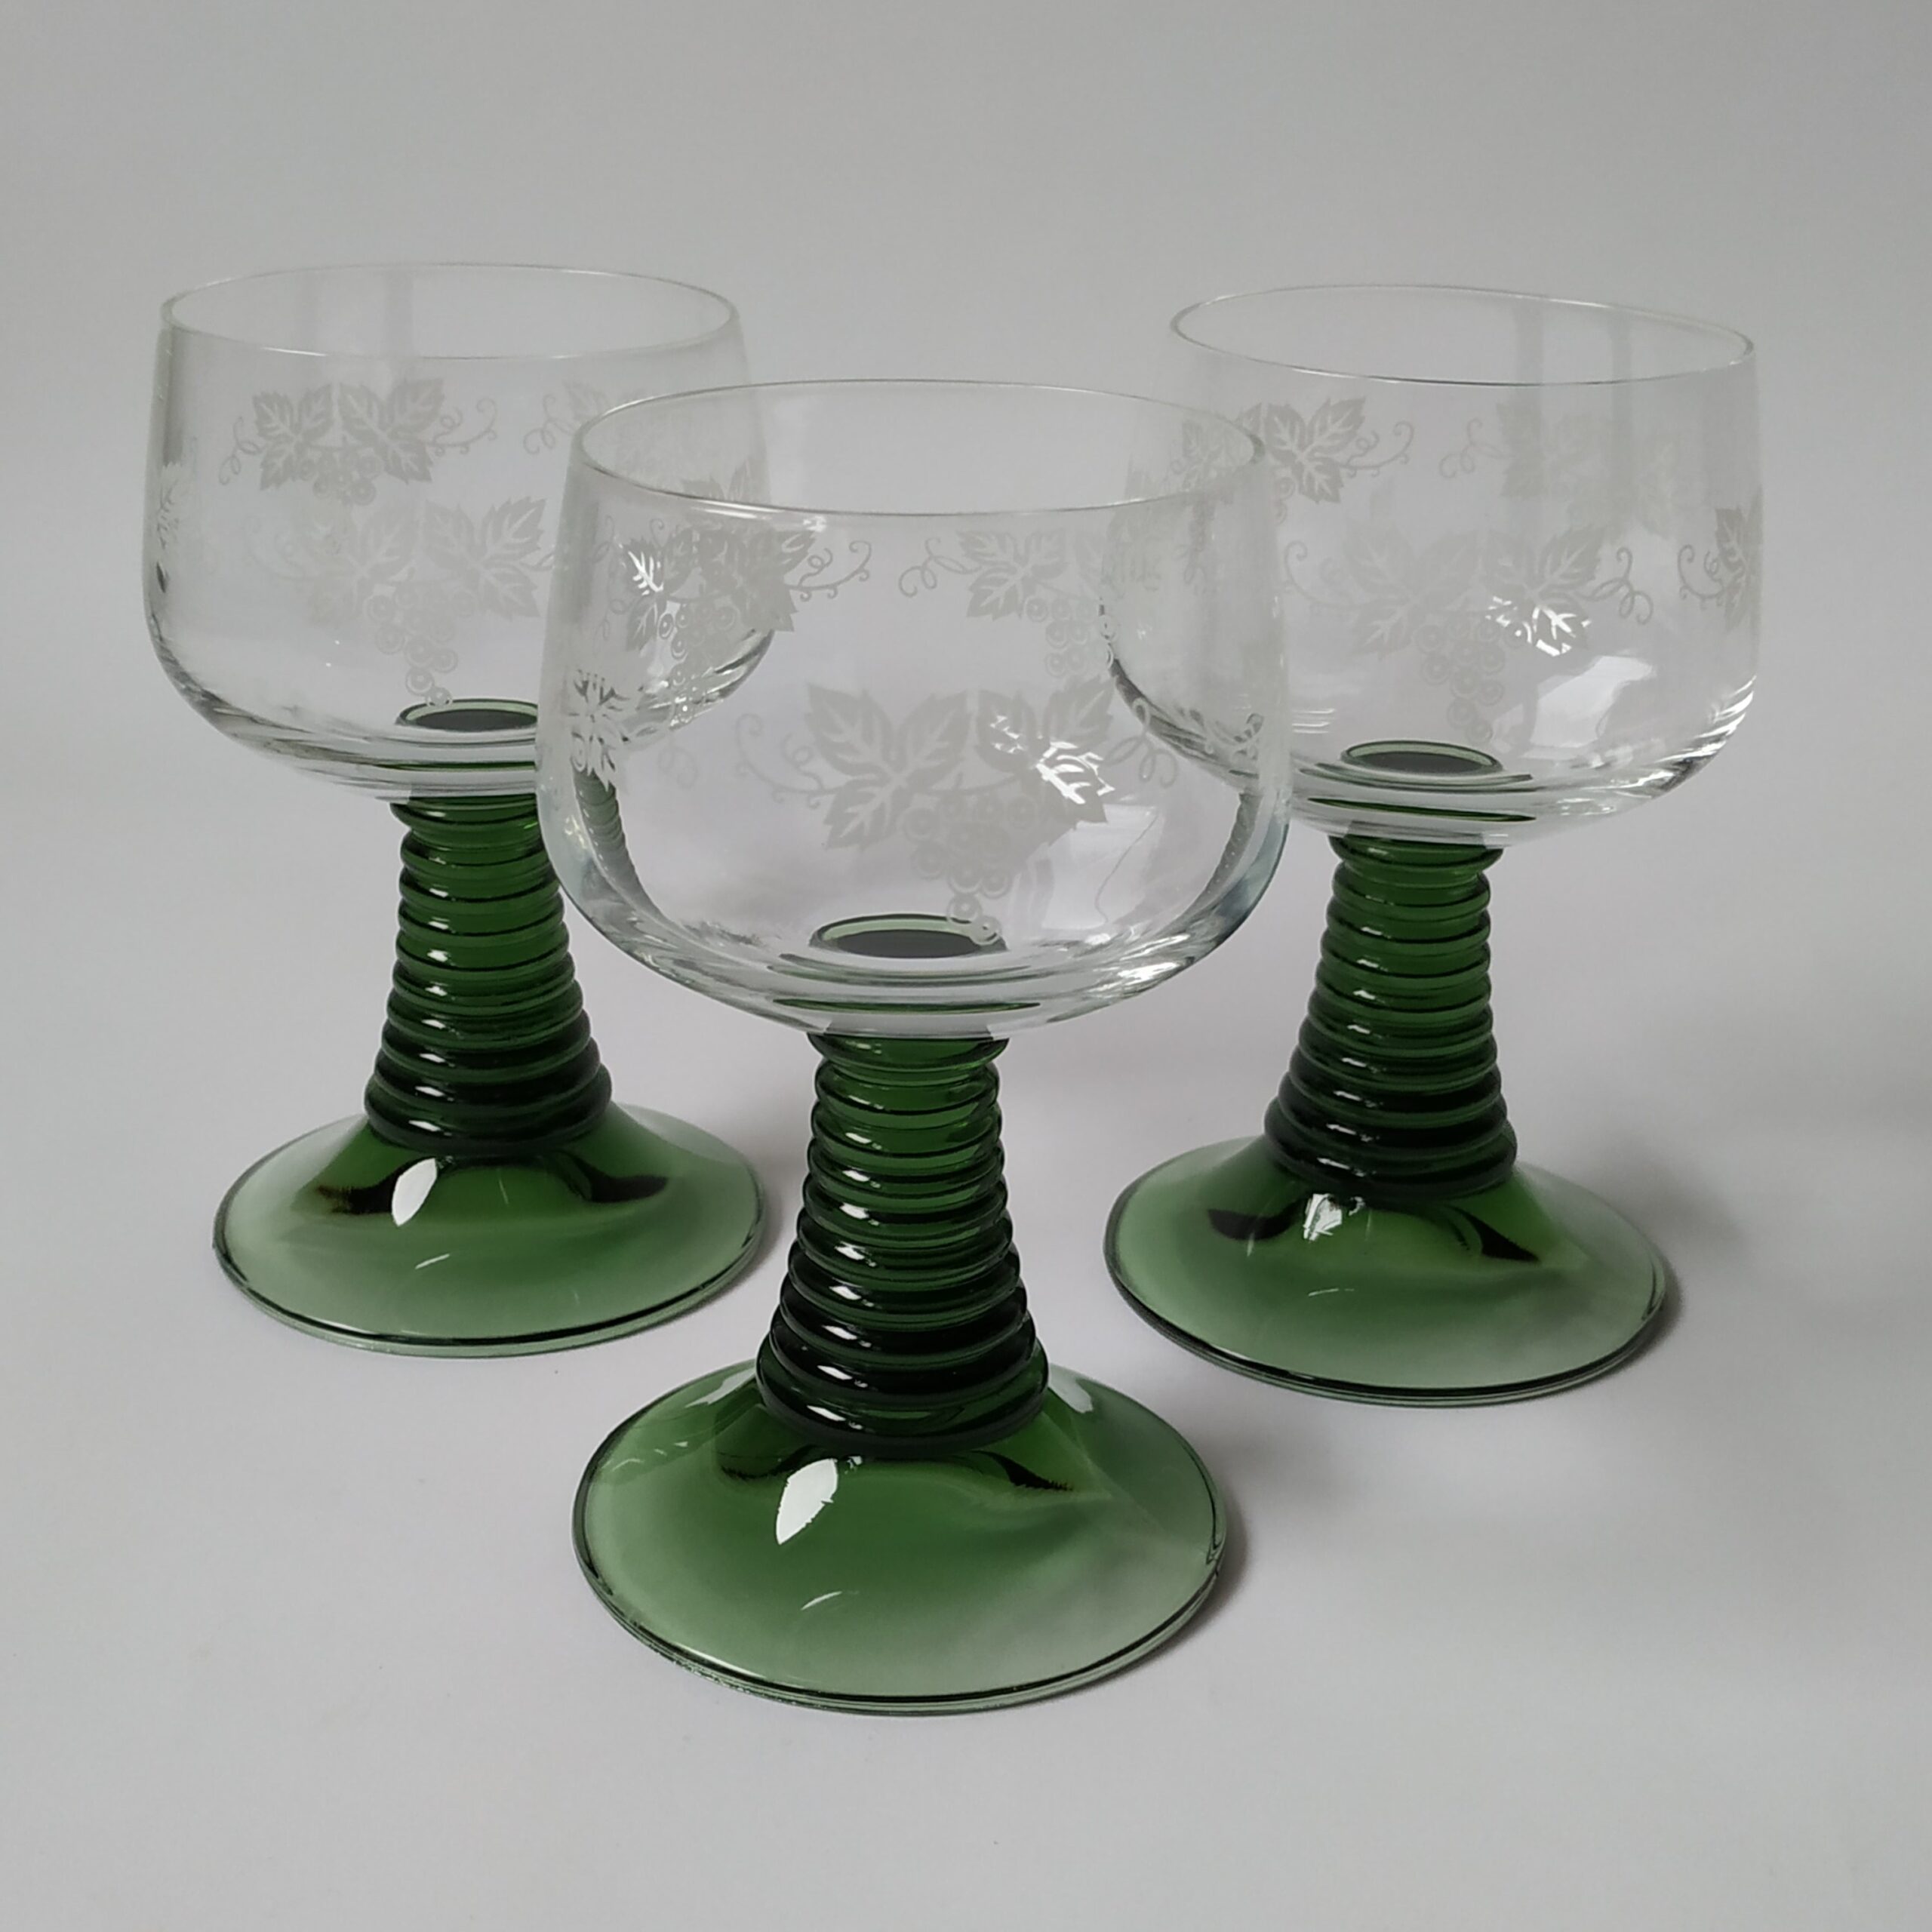 Wijnglazen – moezelglazen met groene voet en afbeelding druiventak – 3 stuks – inhoud 200 ml (1)